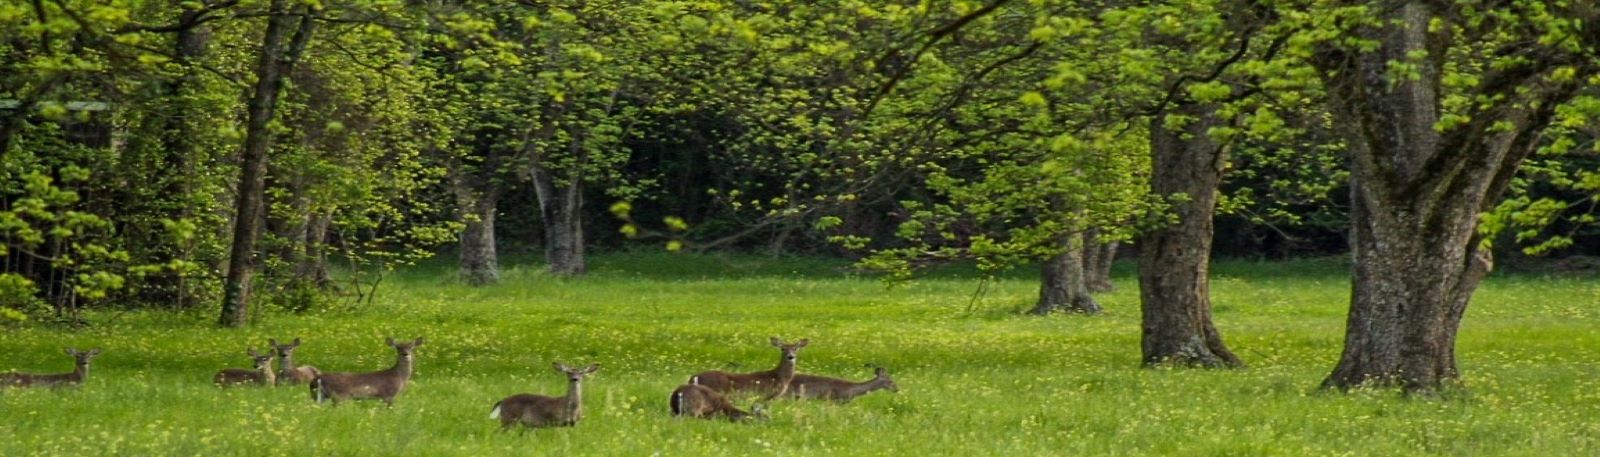 Deer Grazing in Pecan Orchard